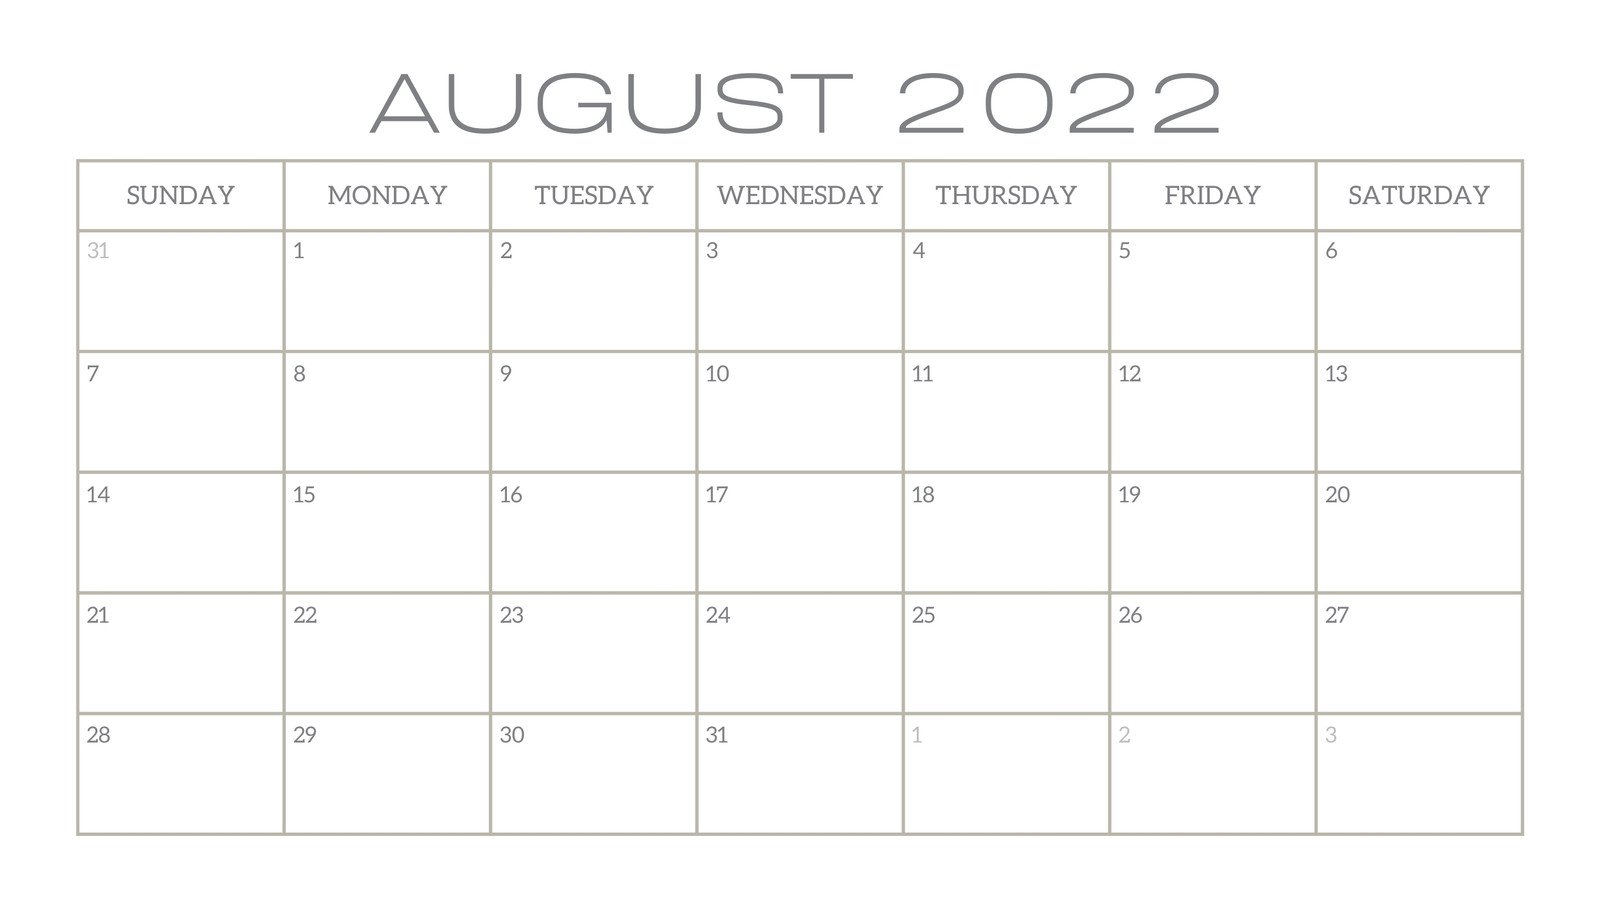 Blank Calendar 2021